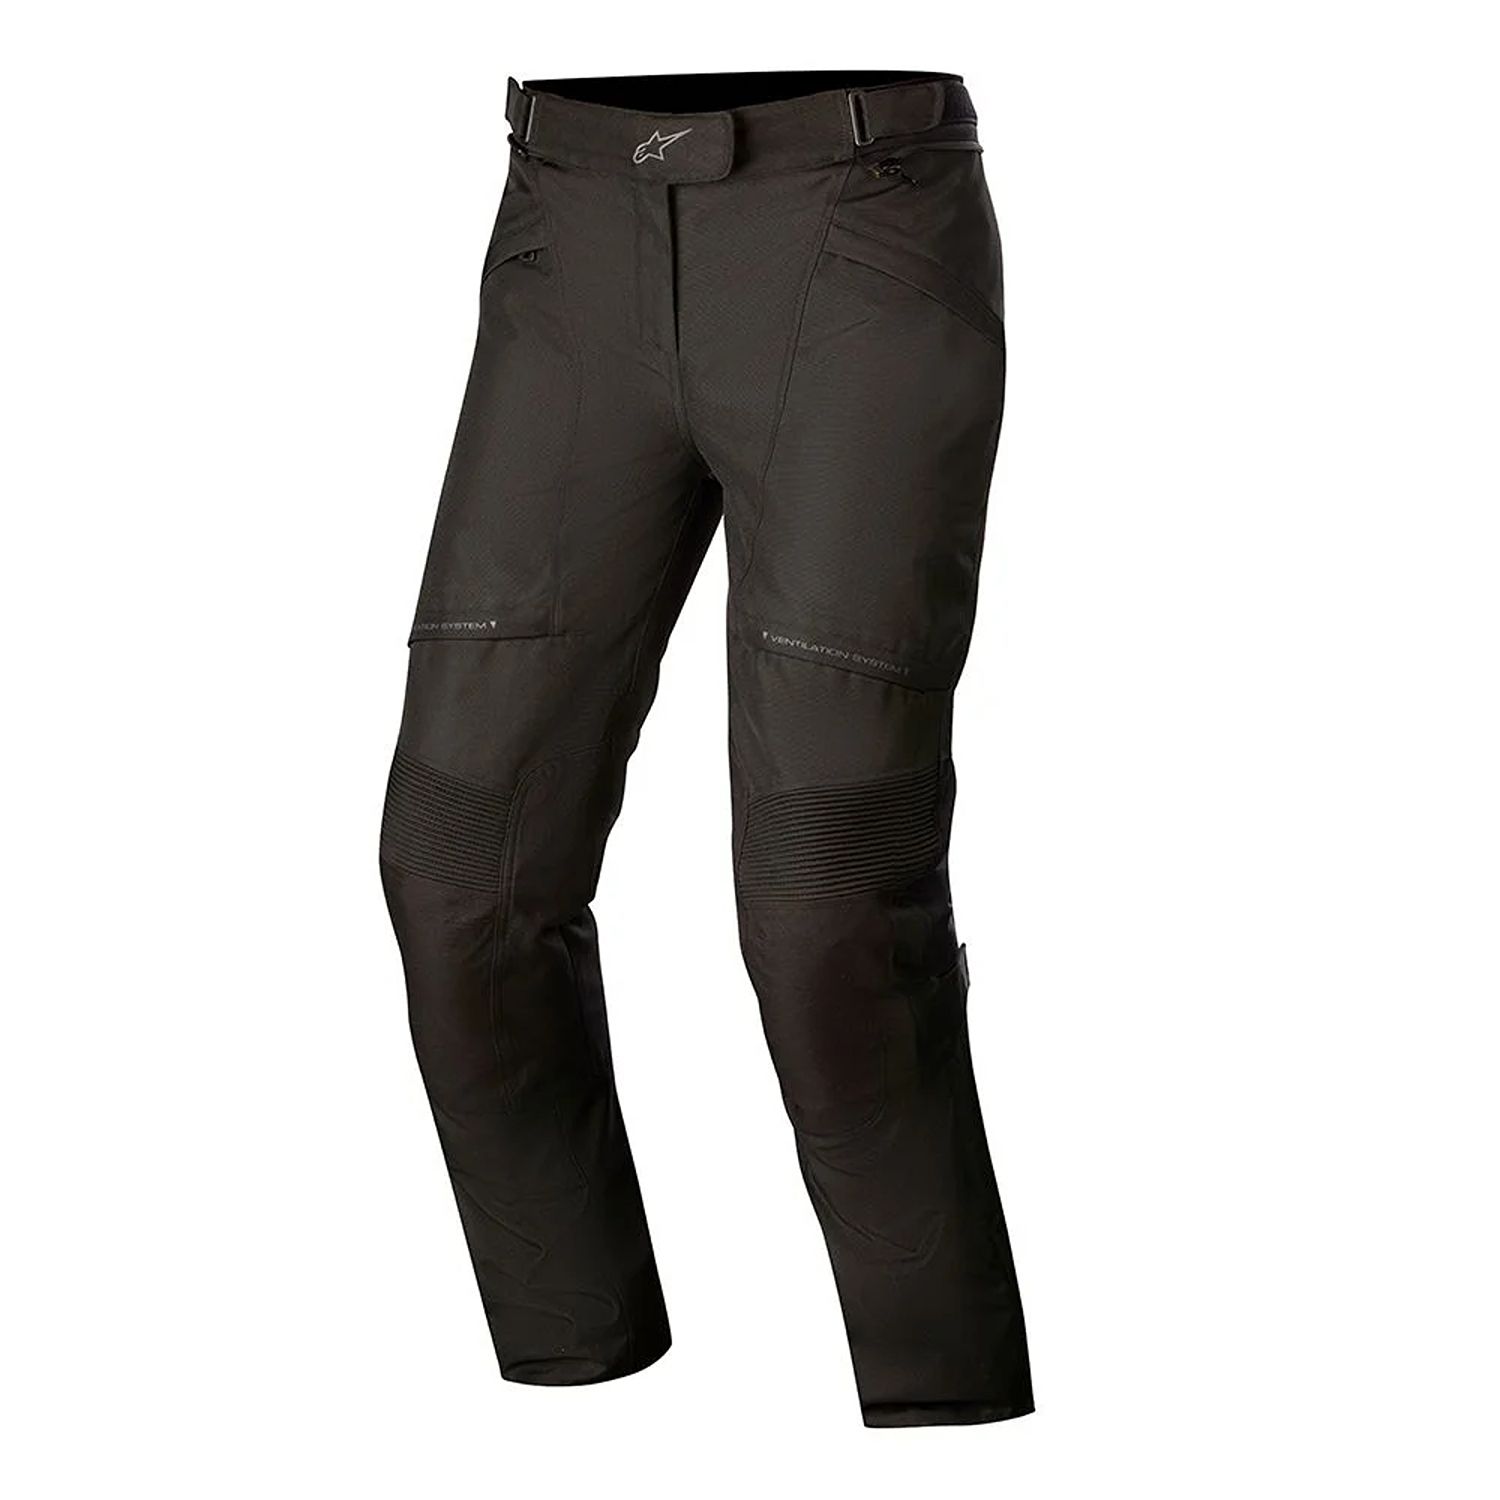 Image of Alpinestars Stella Streetwise Drystar Pants Black Size L ID 8059175096853